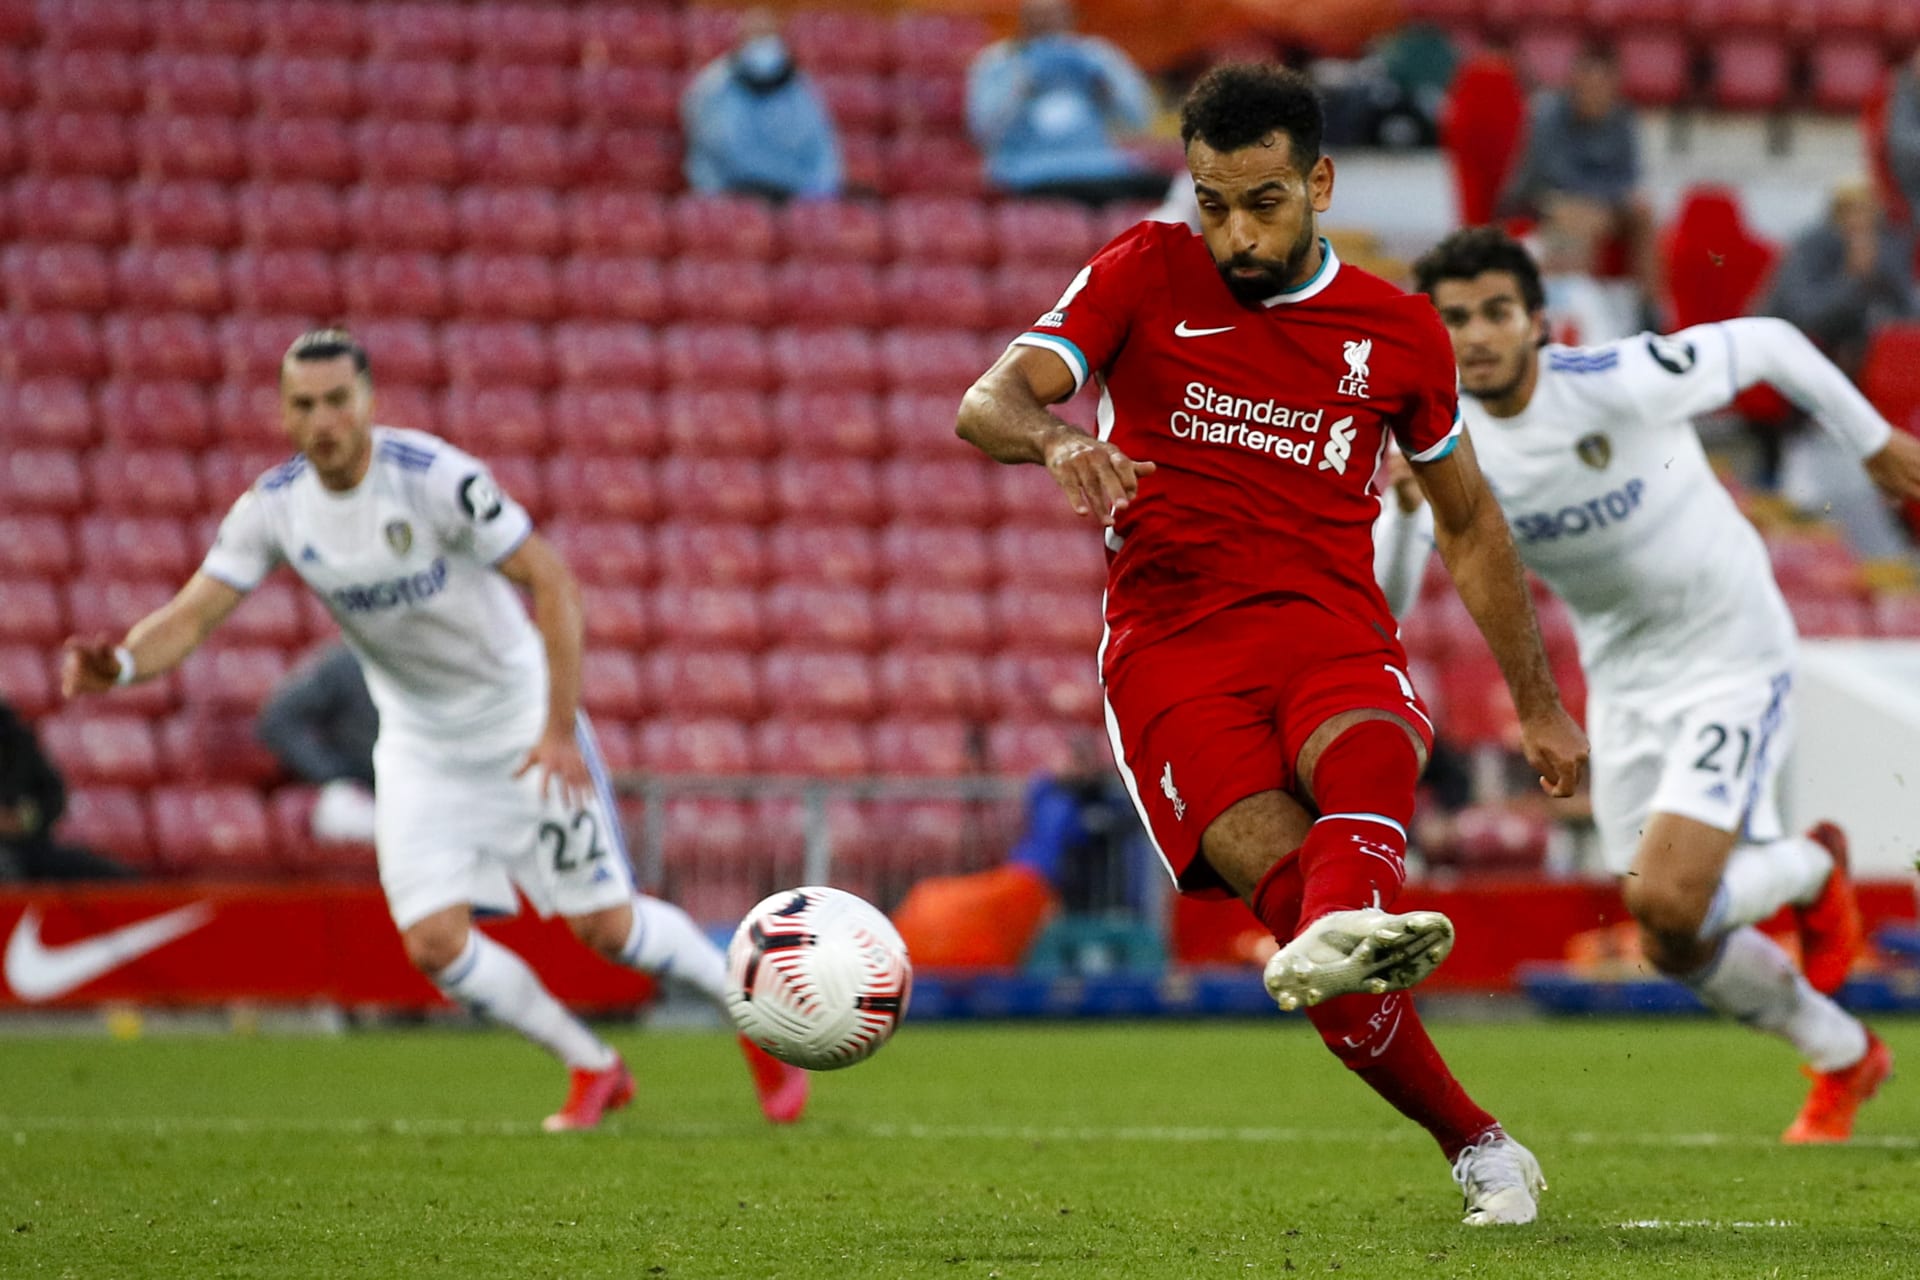 Muhamad Salah z FC Liverpool proměňuje penaltu a střílí čtvrtý gól do sítě Leeds United v prvním kole anglické Premiér League, který svému klubu zajistil vítězství.